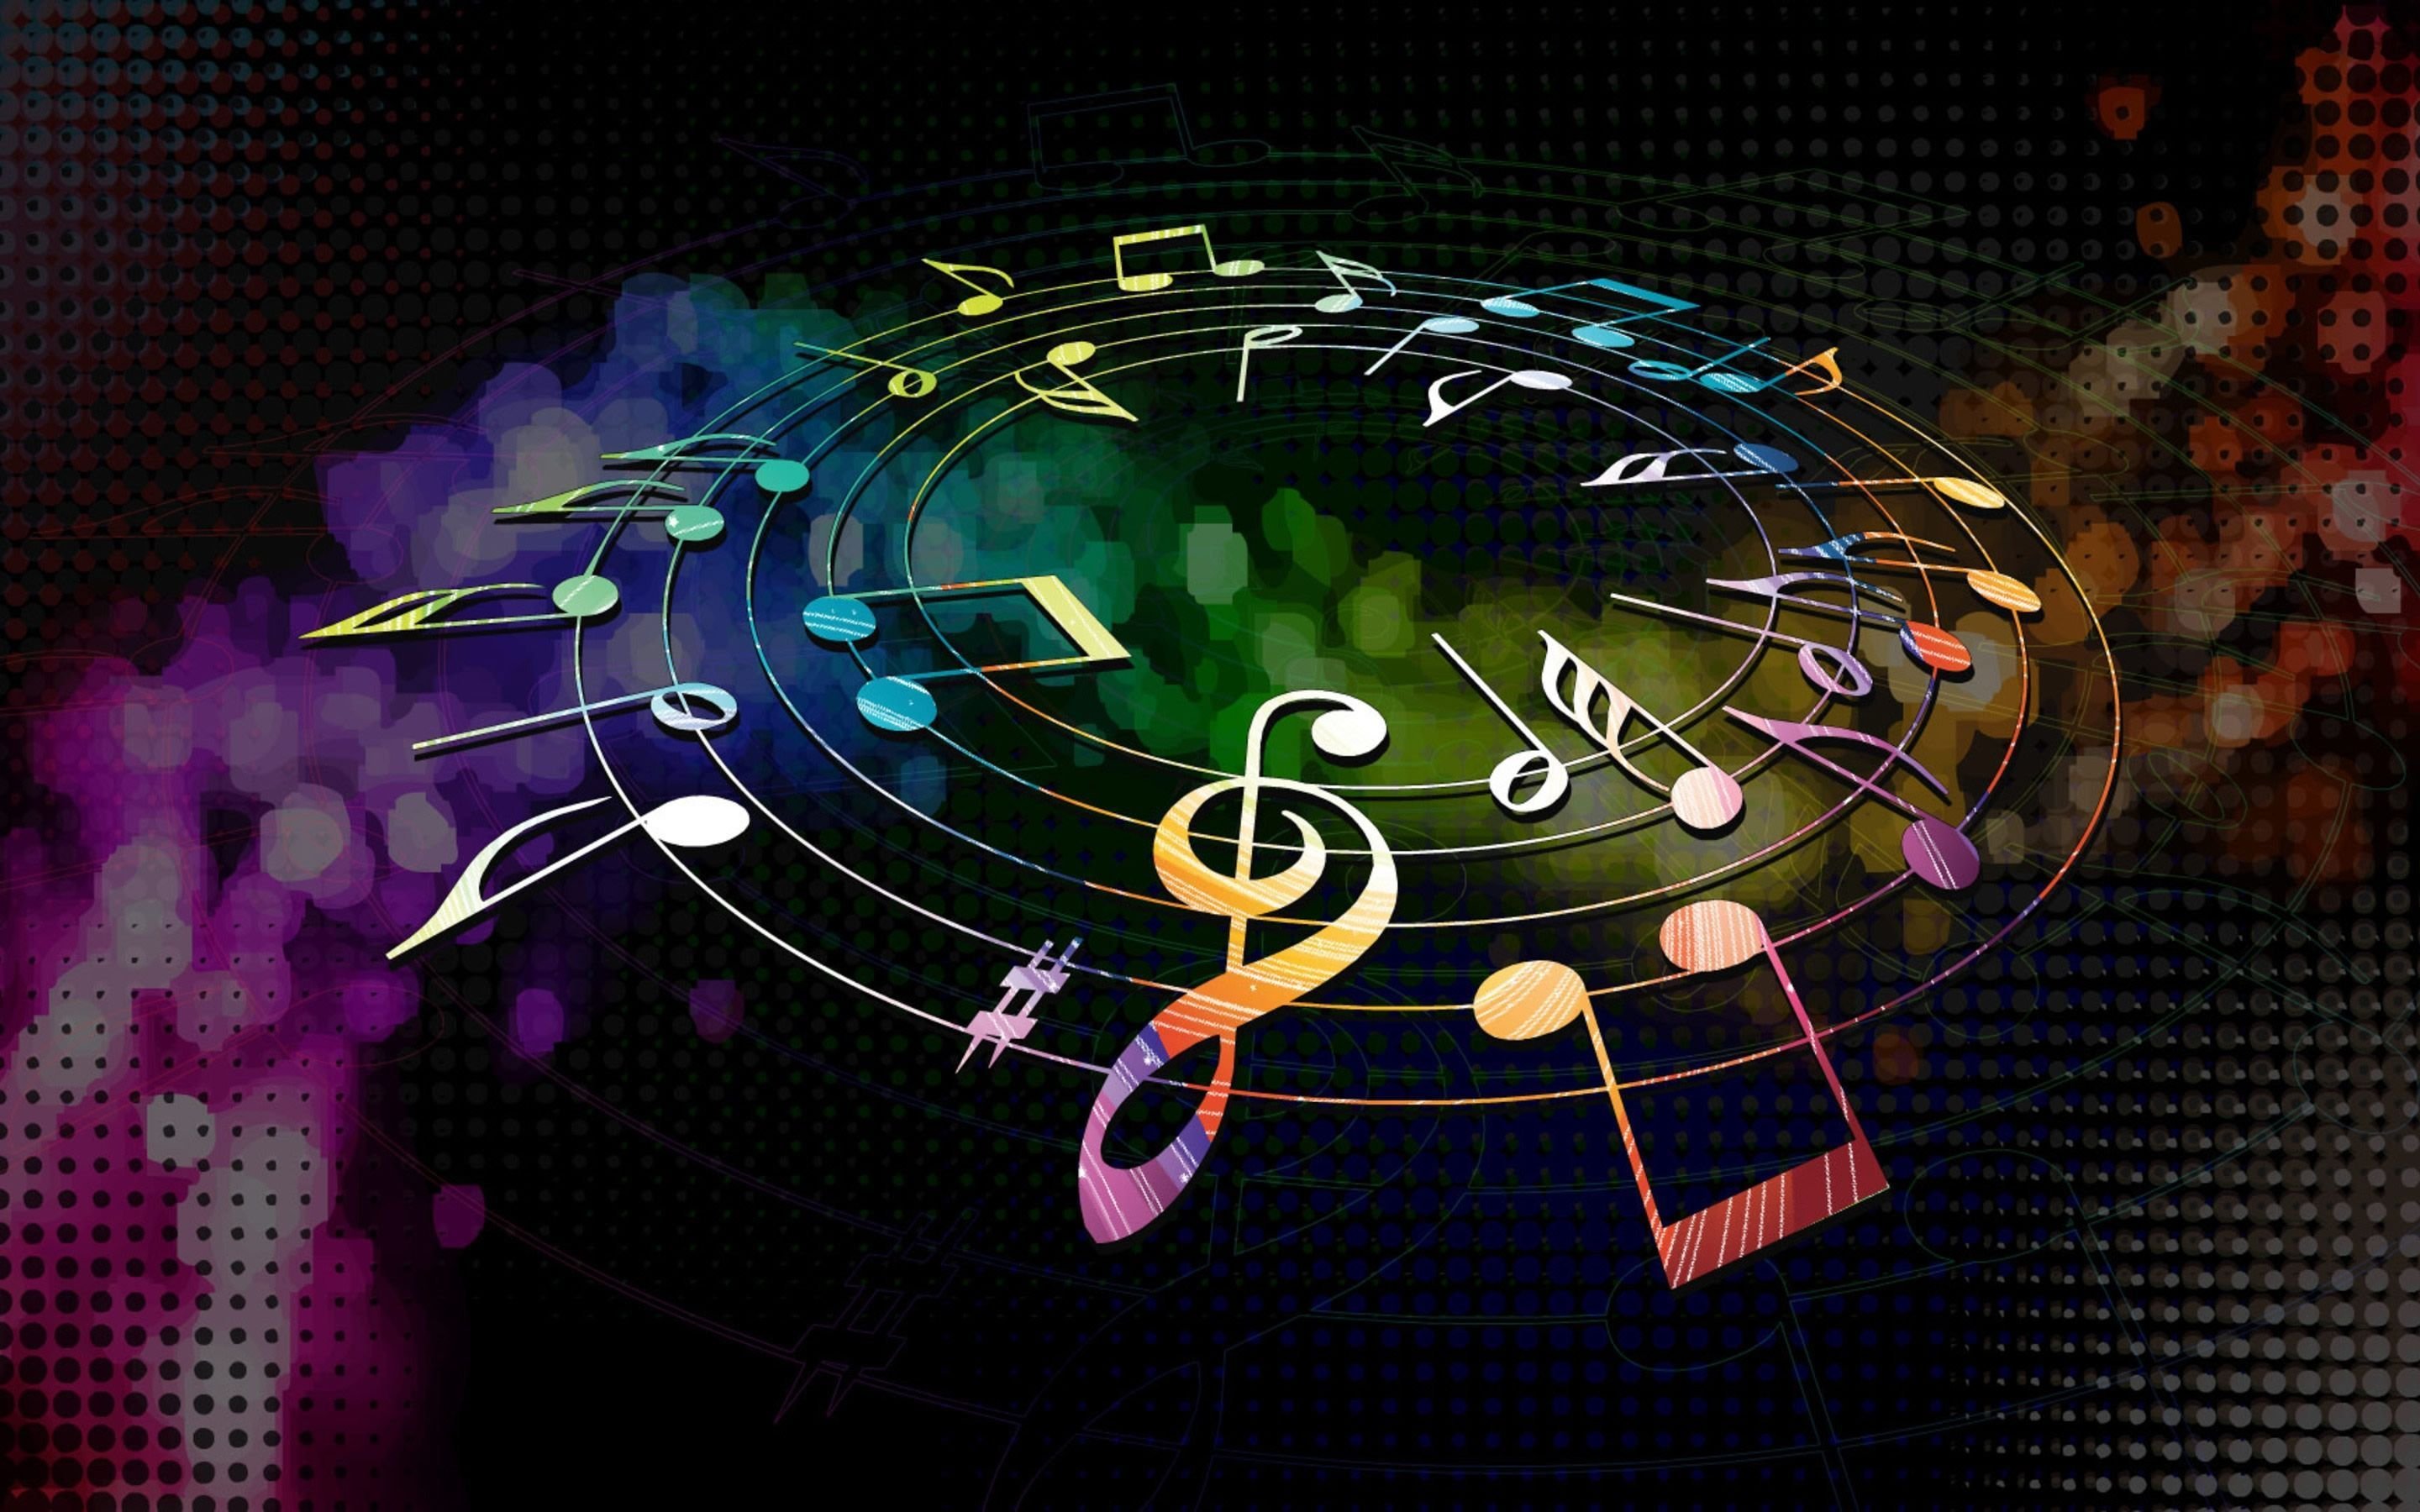 Music round. Музыкальный фон. Музыкальная абстракция. Музыкальные обои. Картинки с музыкальной тематикой.